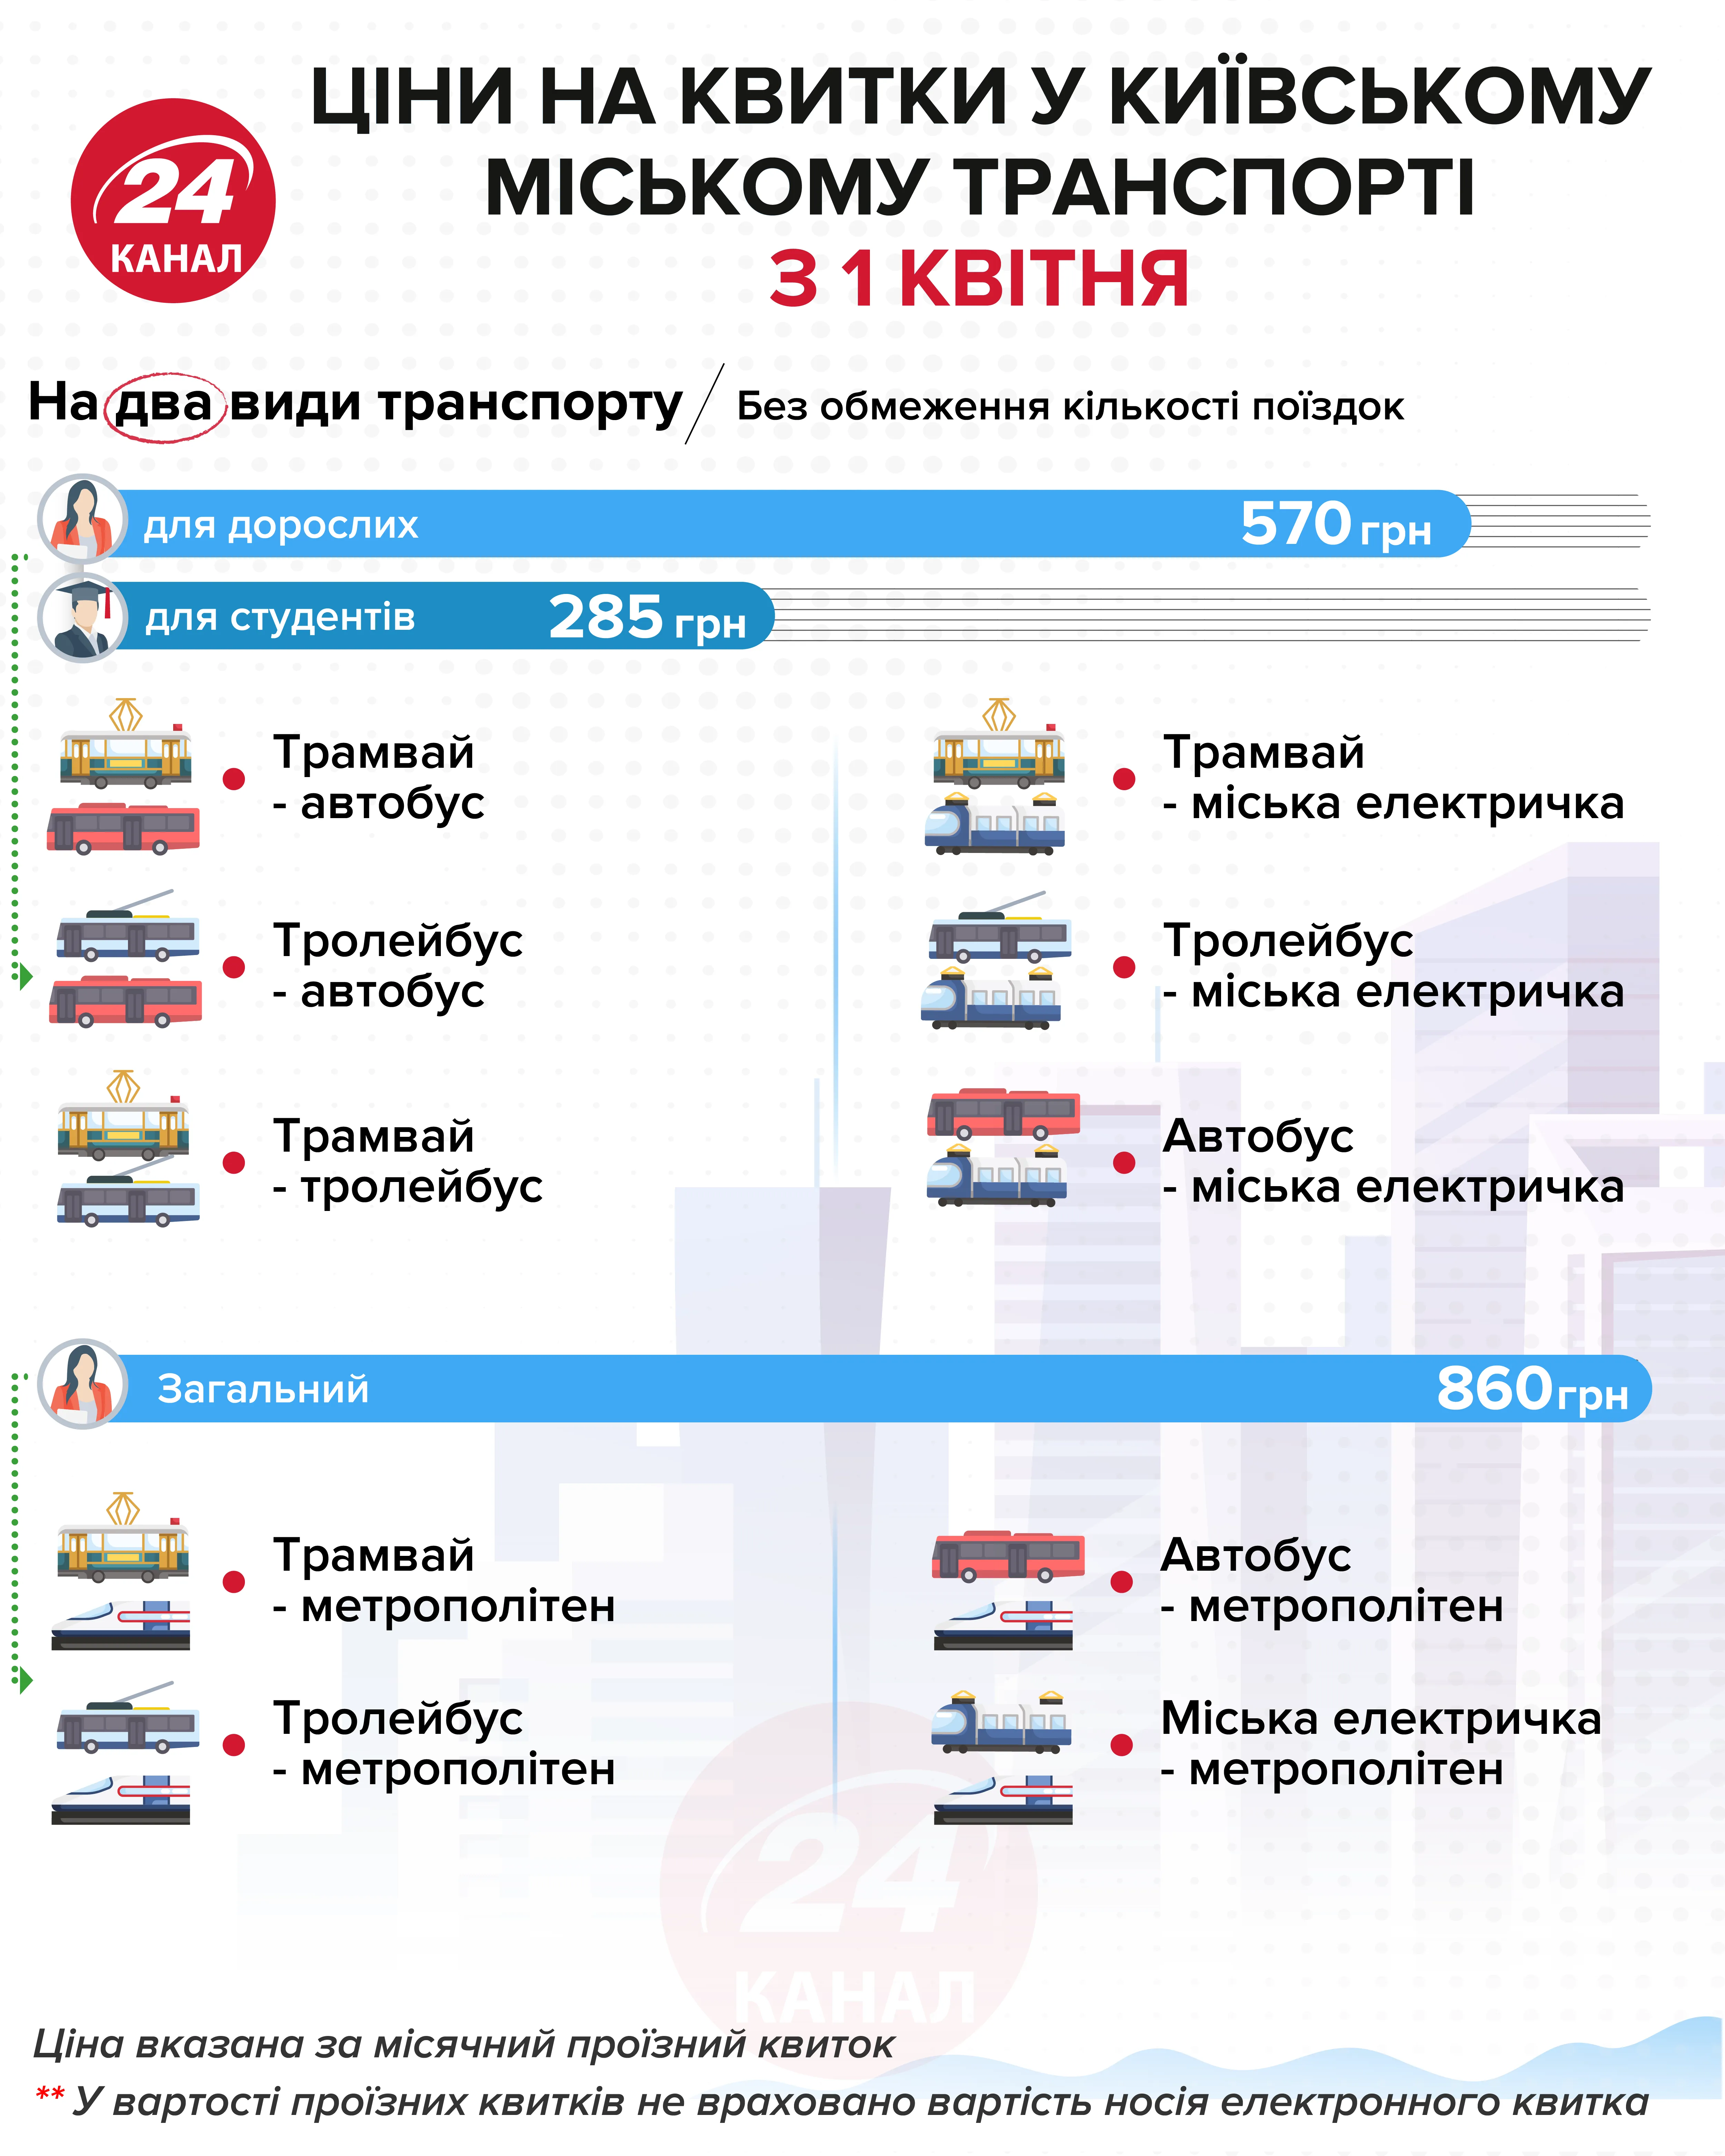 Стоимость проездного на два вида транспорта  Инфографика 24 канала